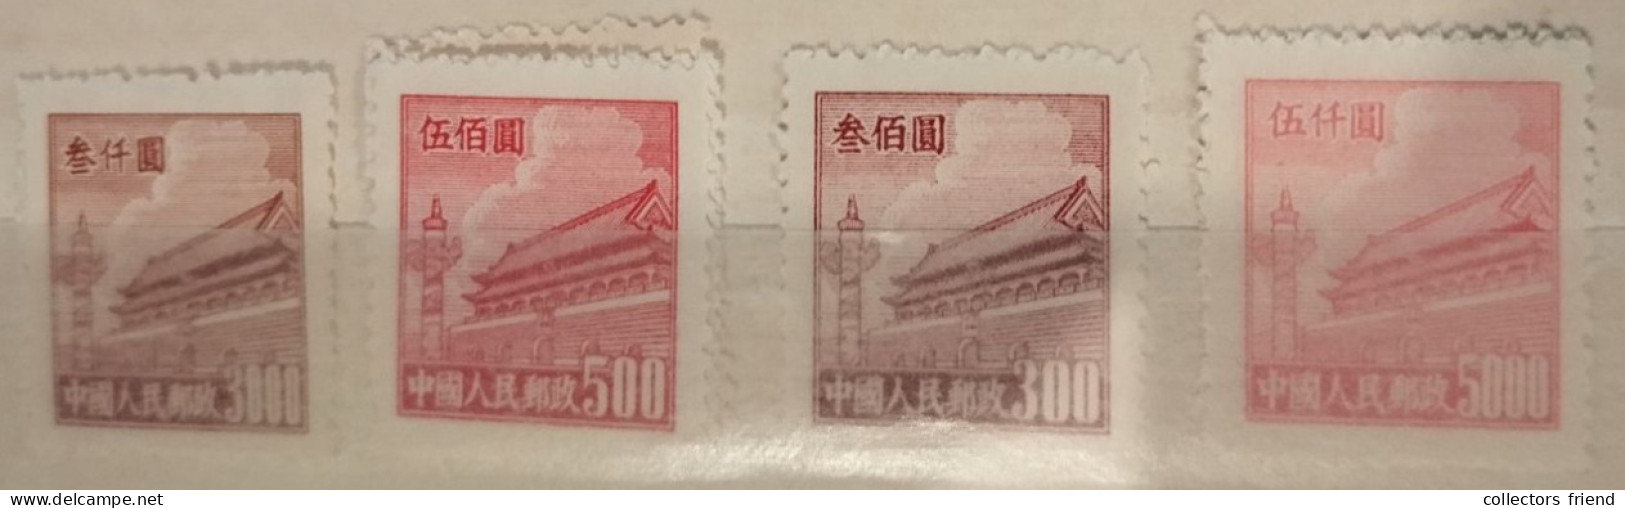 China- 1950 - 51 - Scott Nr.: 87 + 89 + 93 + 94 - MNH - Ungebraucht